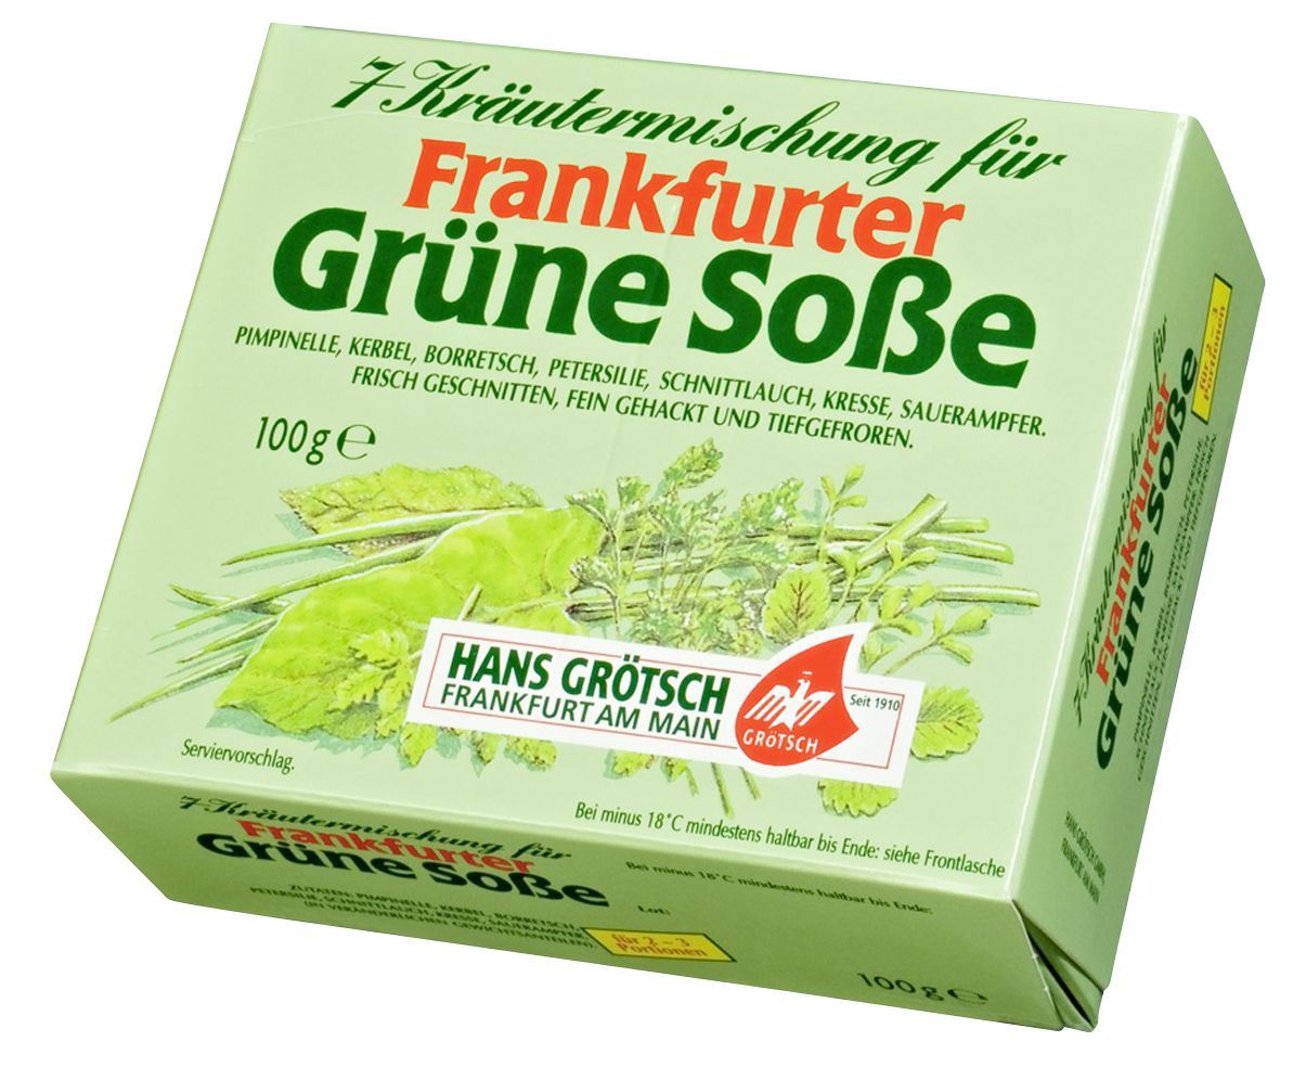 Grötsch - 7 Kräutermischung für Frankfurter grüne Soße, tiefgefroren - 100 g Packung